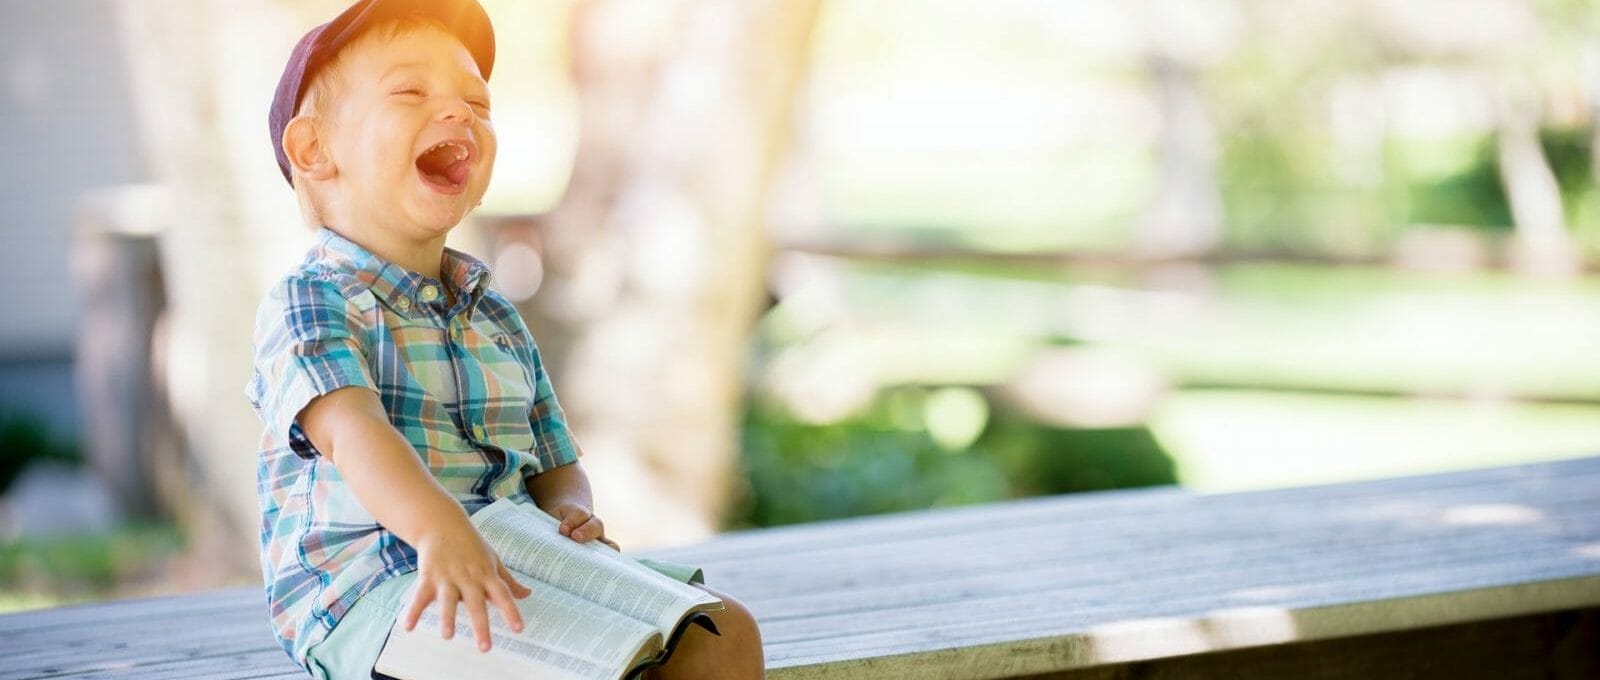 criança sorrindo em um banco ao ar livre com um livro no colo